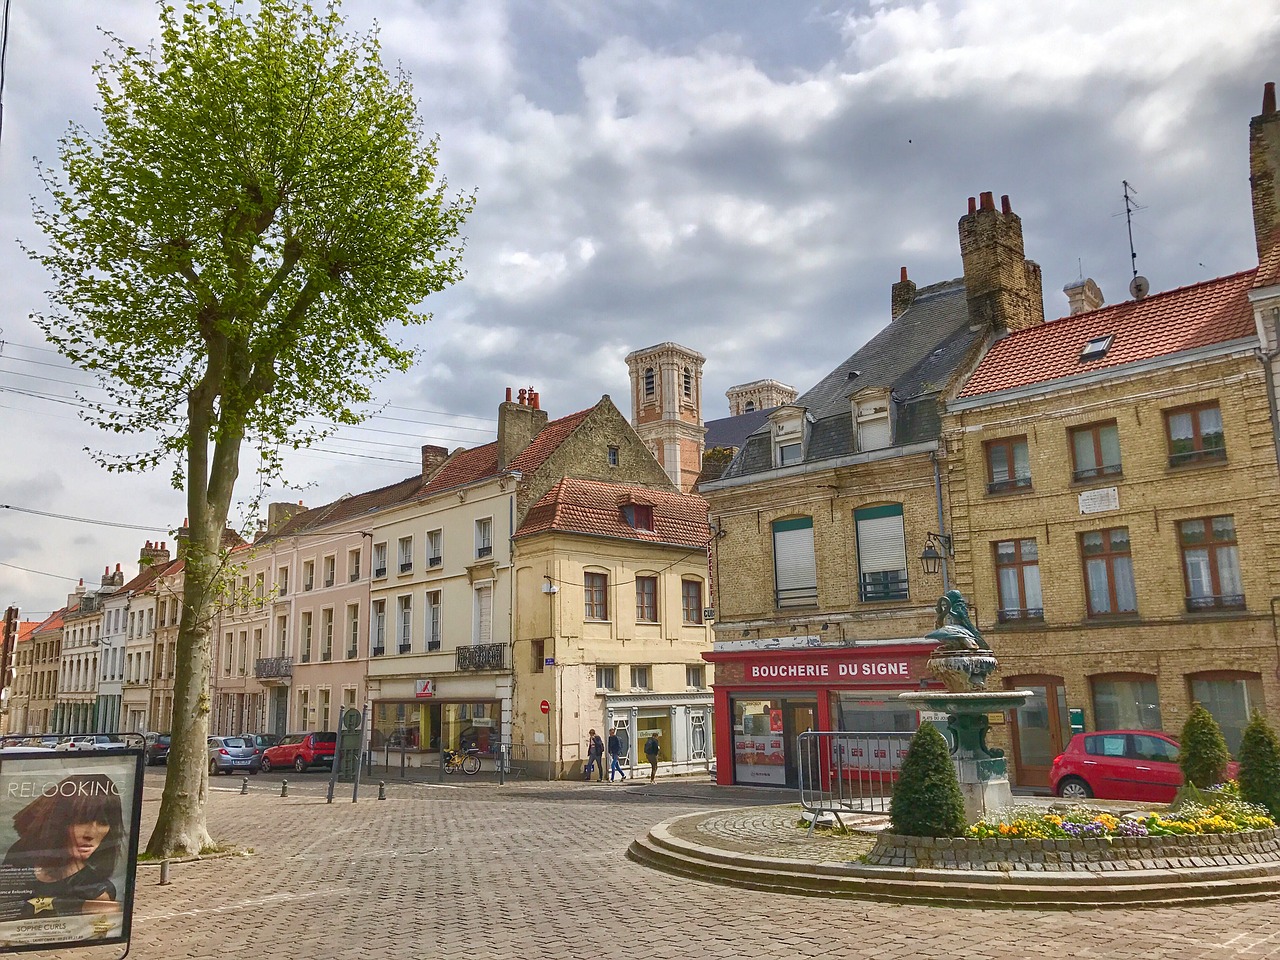 Kaimas, Saint-Omer, France, Gatvė, Architektūra, Europa, Prancūzų Kalba, Kelionė, Turizmas, Europietis